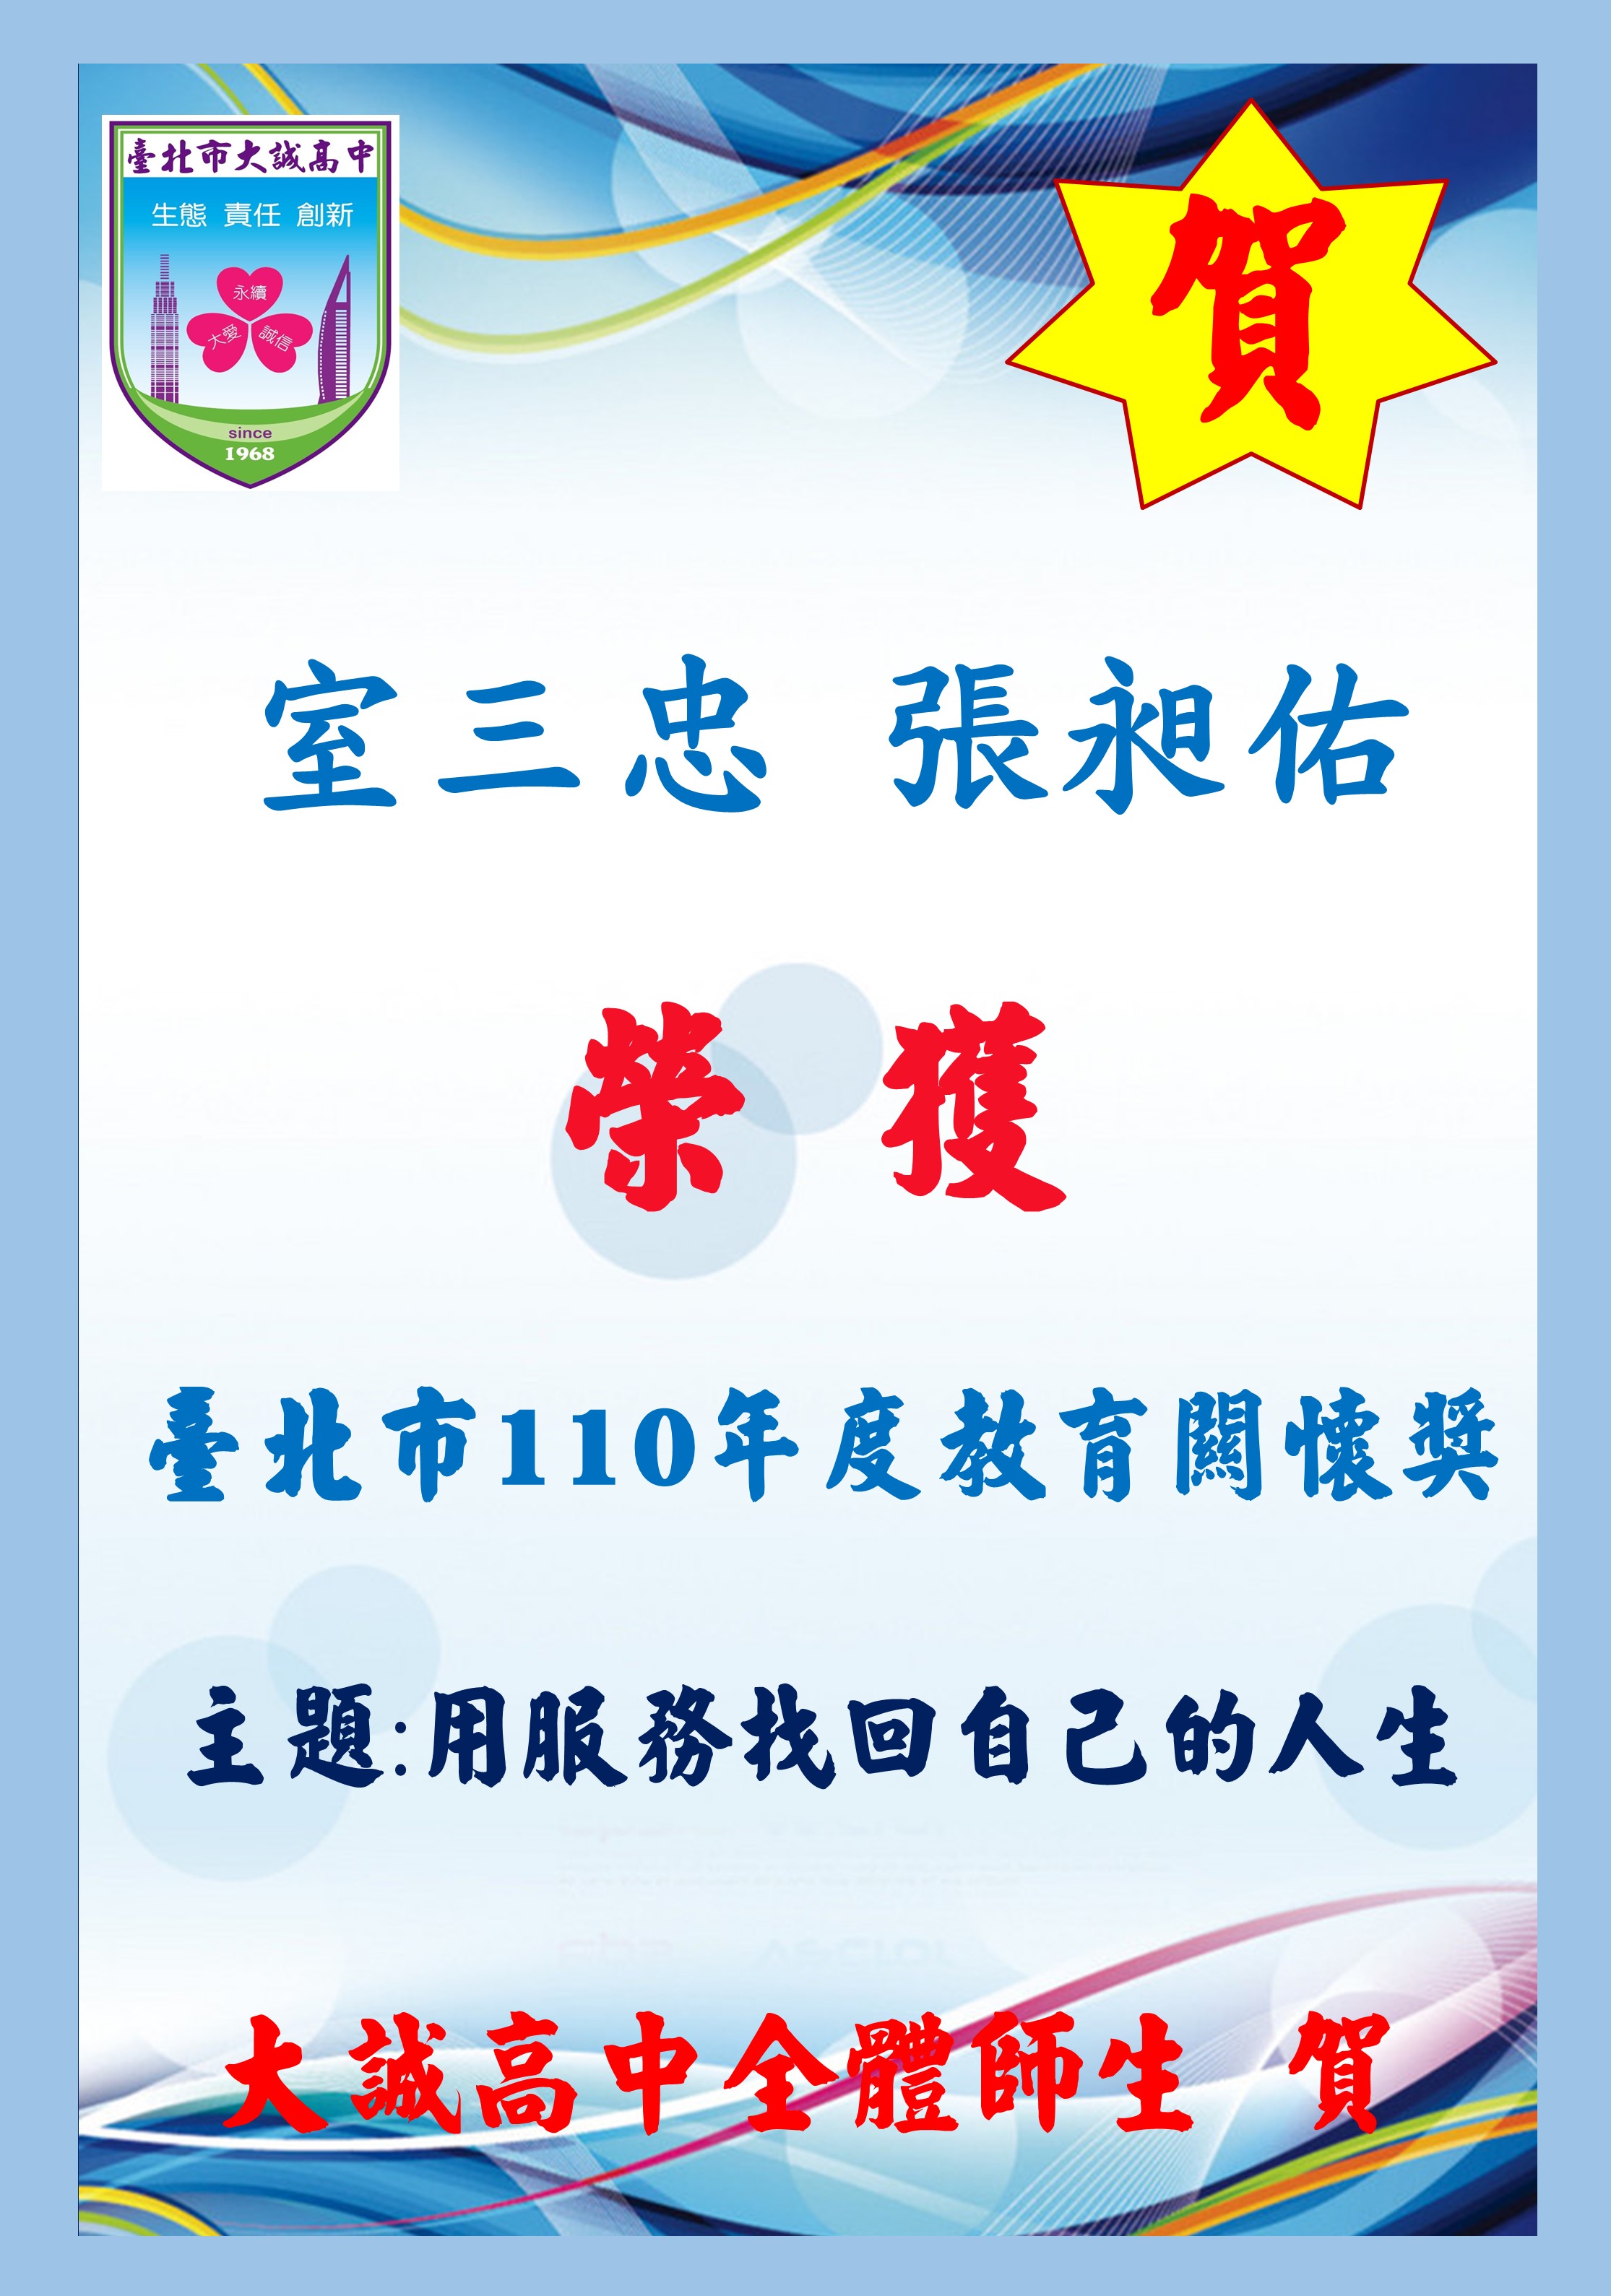 本校輔導室榮獲111年臺北市政府教育局表揚優良特殊教育人員(唯一私校代表)